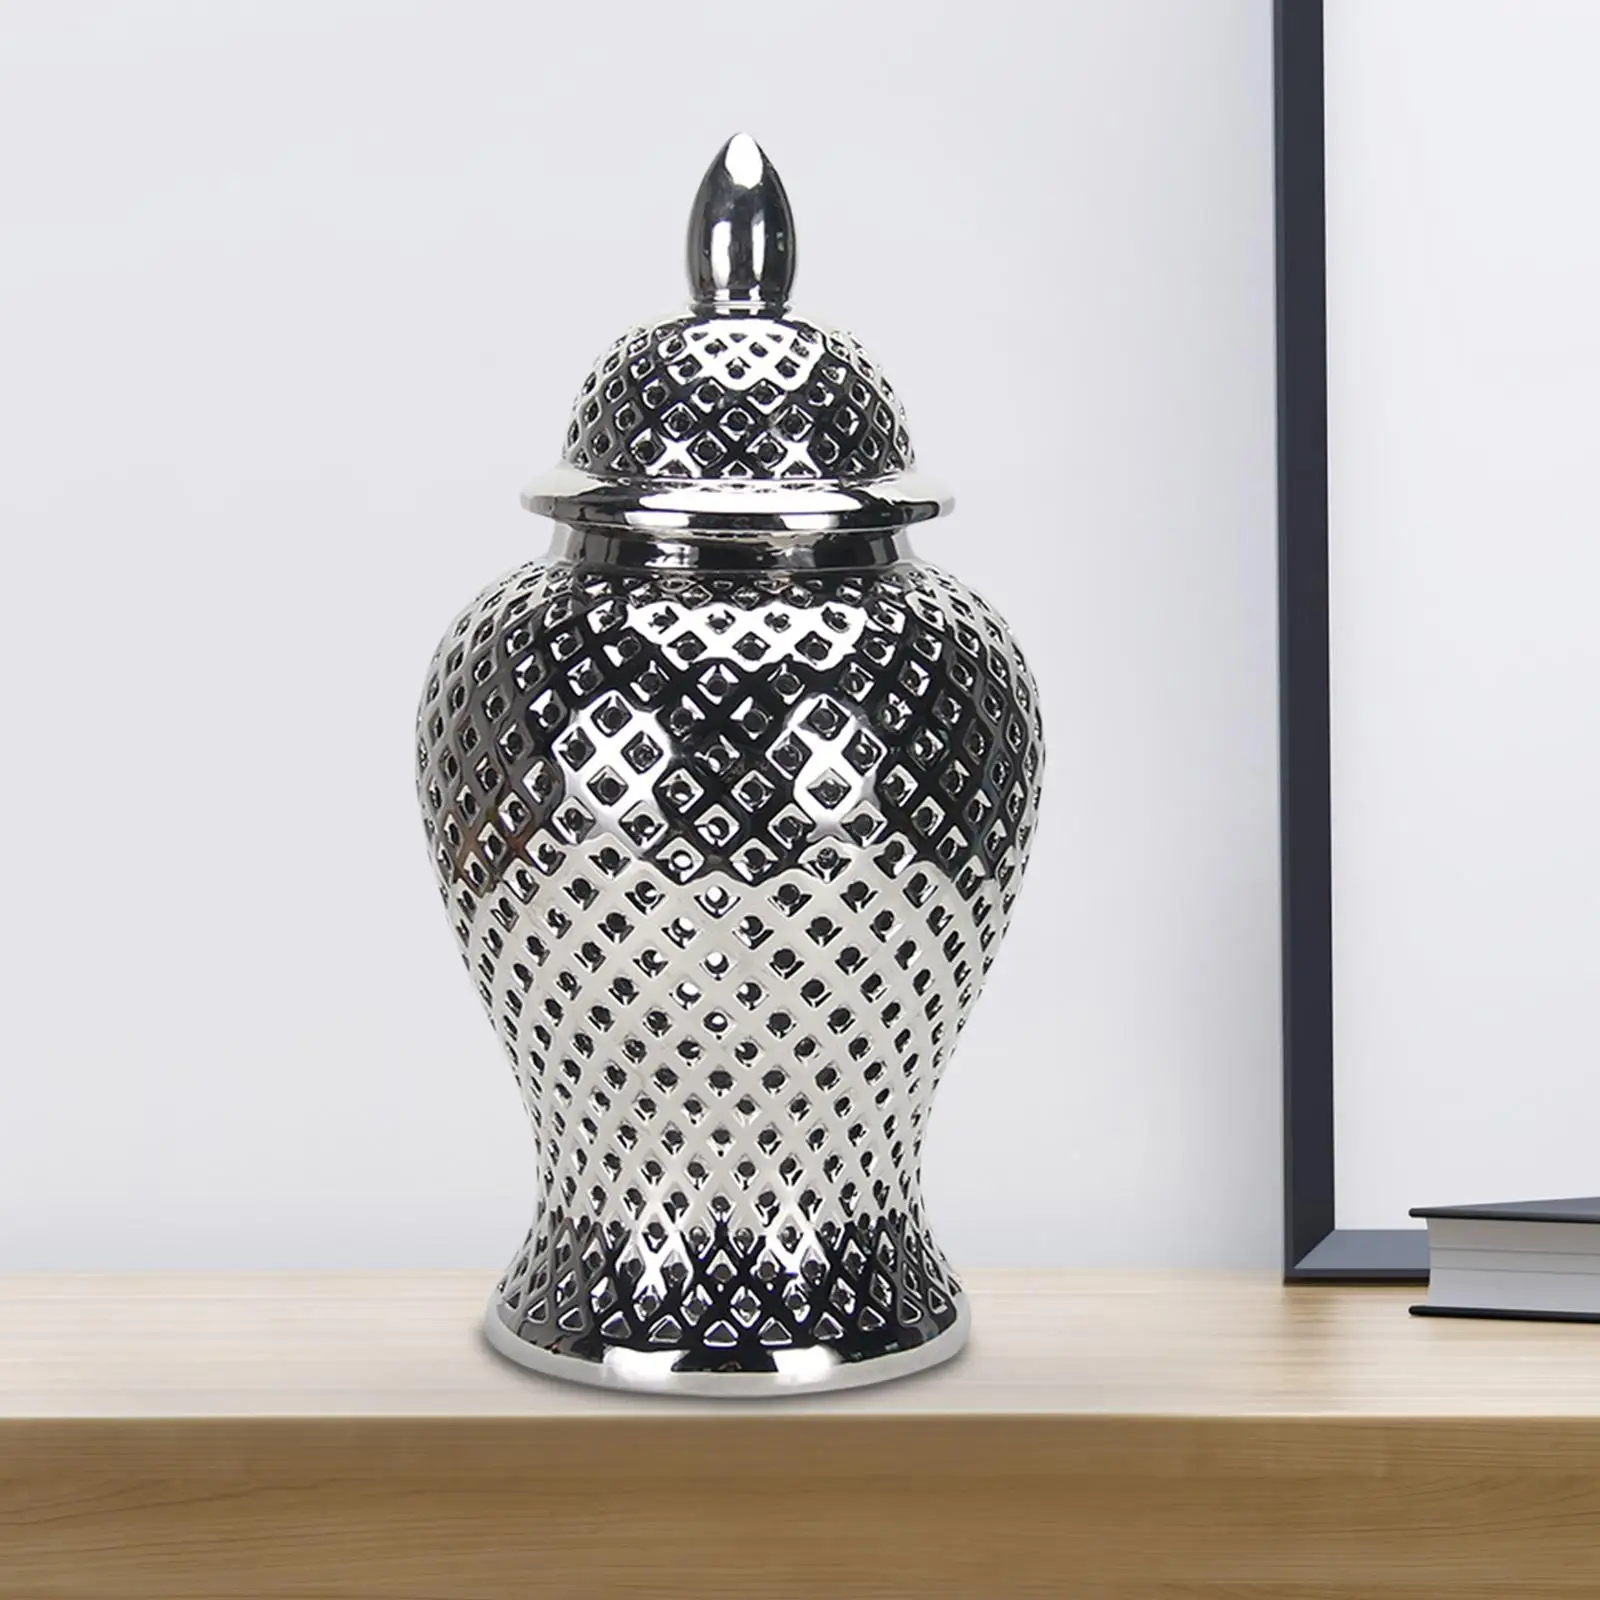 Ceramic Ginger Jar Elegant Decorative Vase Storage Decorative Vase for Kitchen Decoration Living Room Bedroom Desktop